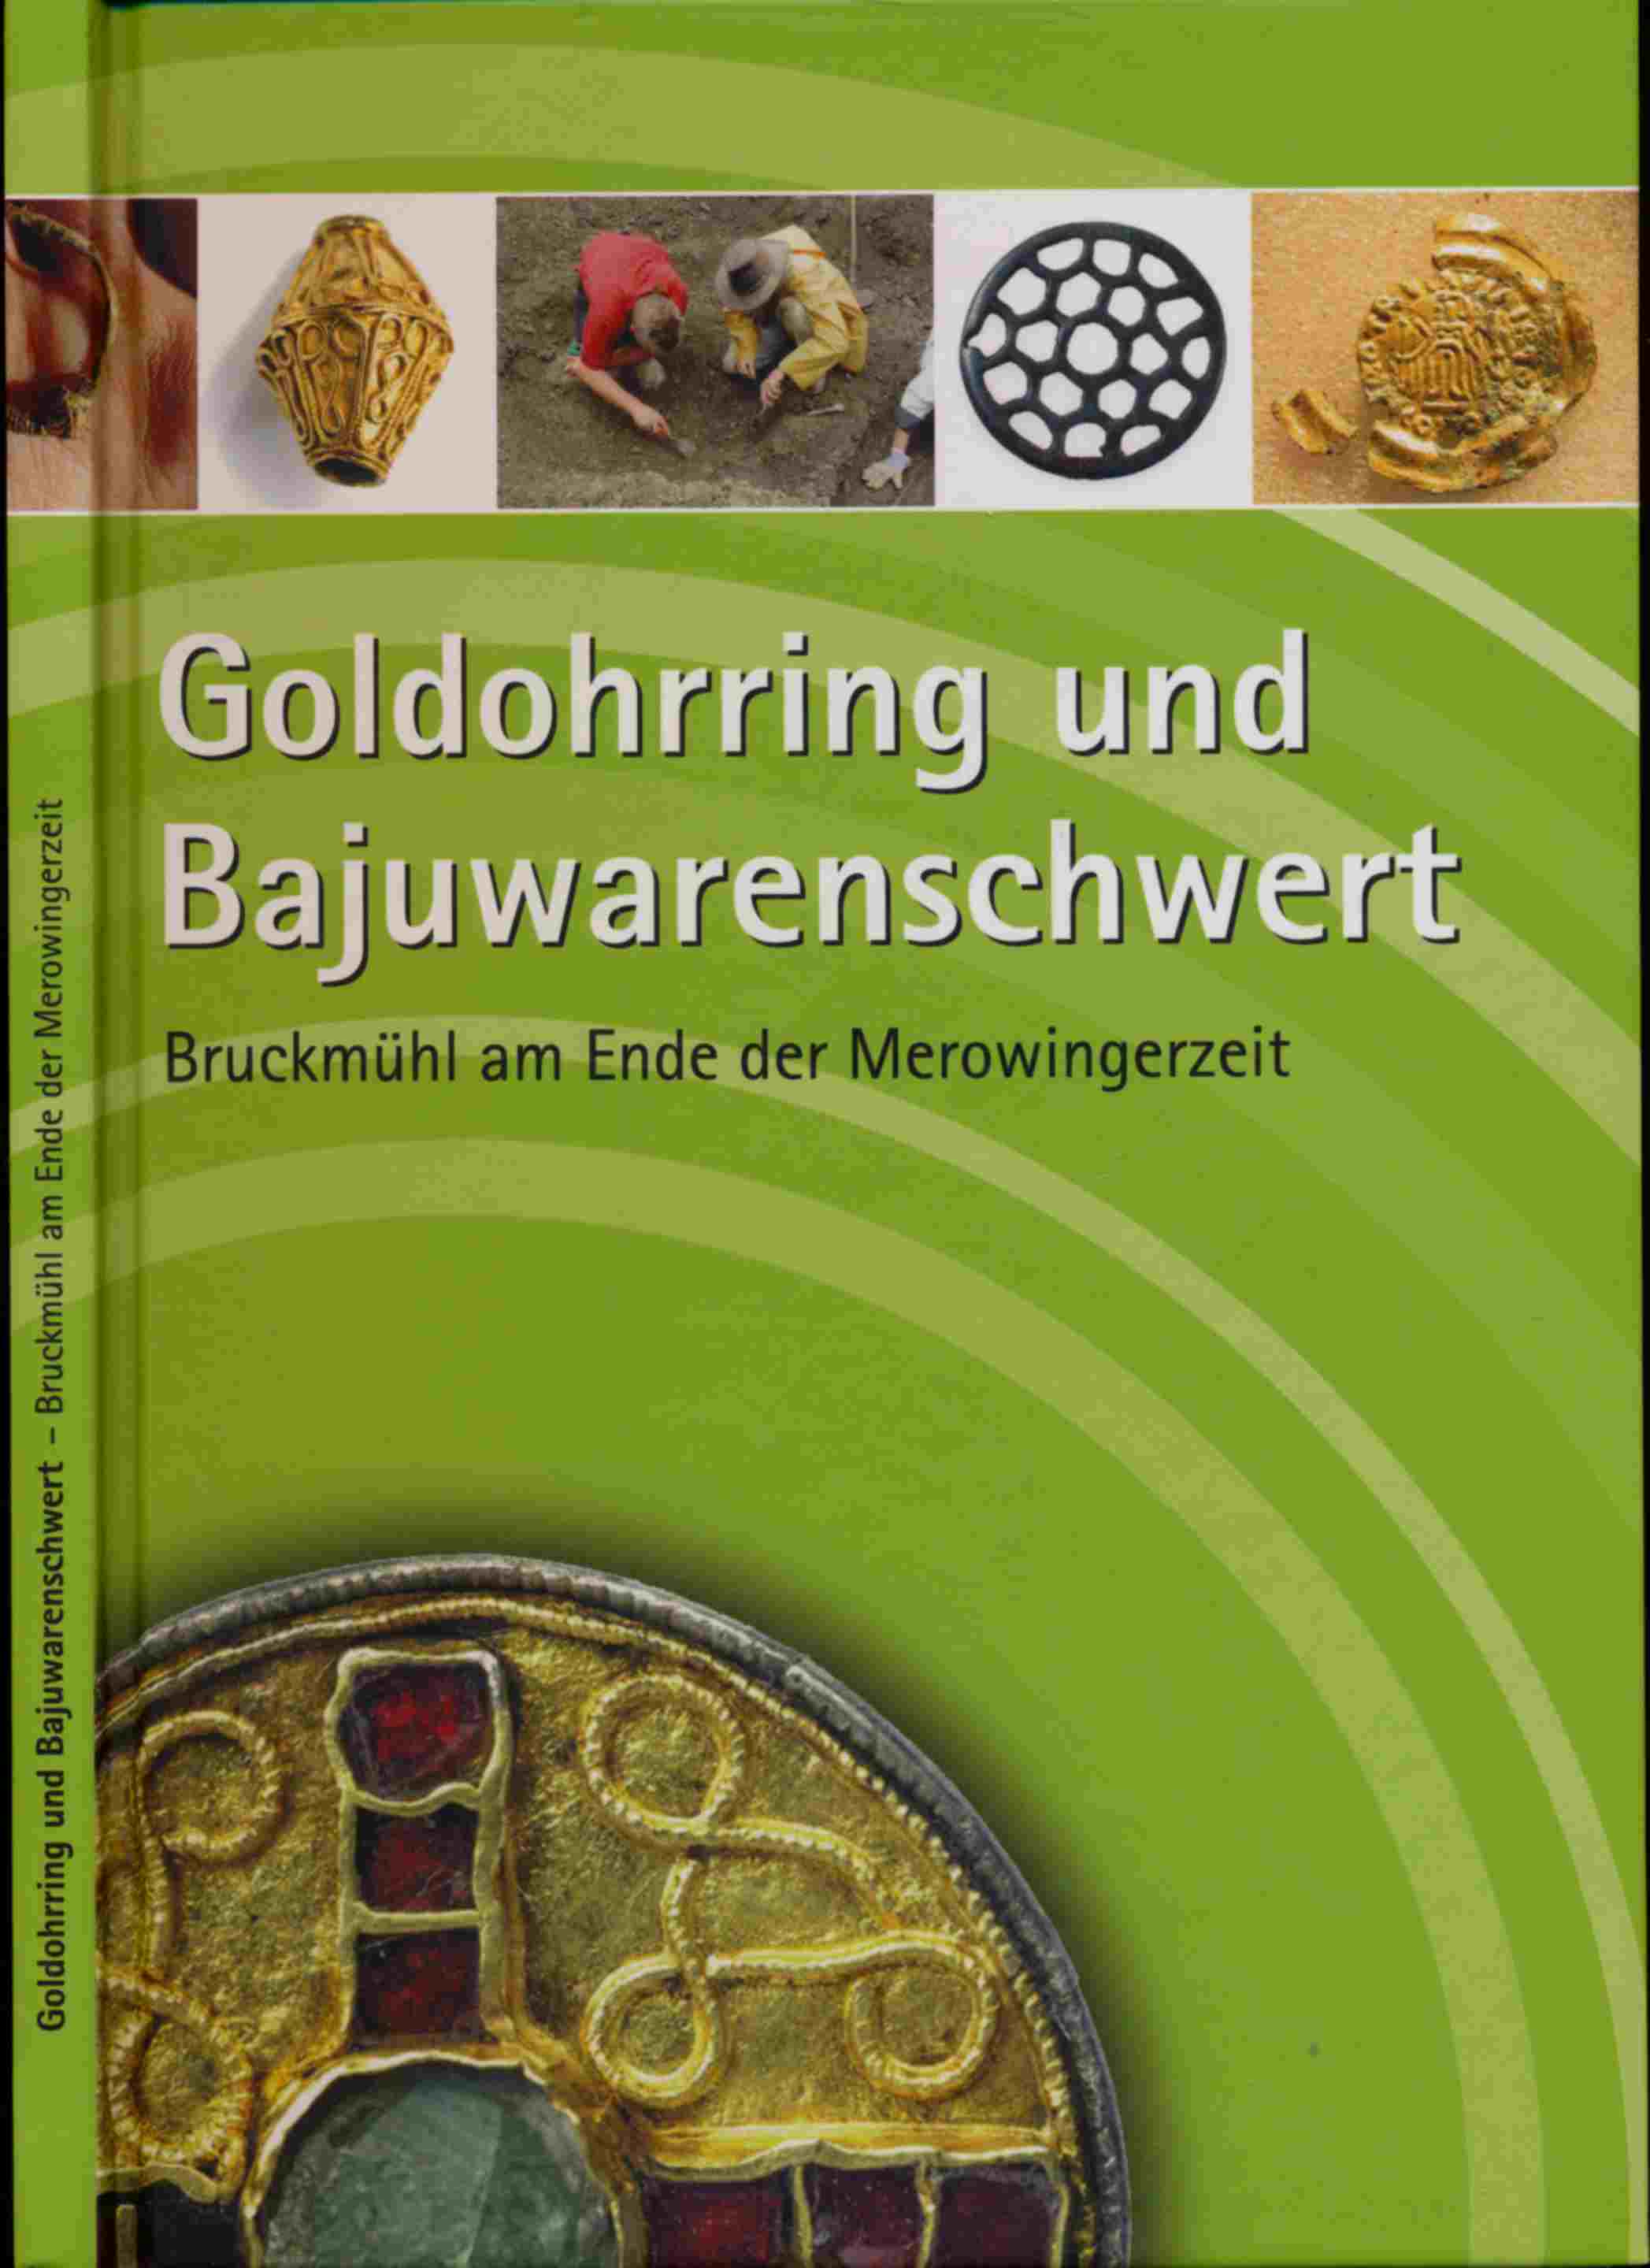 SUHR, Grietje / FEHR, Hubert  Goldohrring und Bajuwarenschwert. Bruckmühl am Ende der Merowingerzeit. 